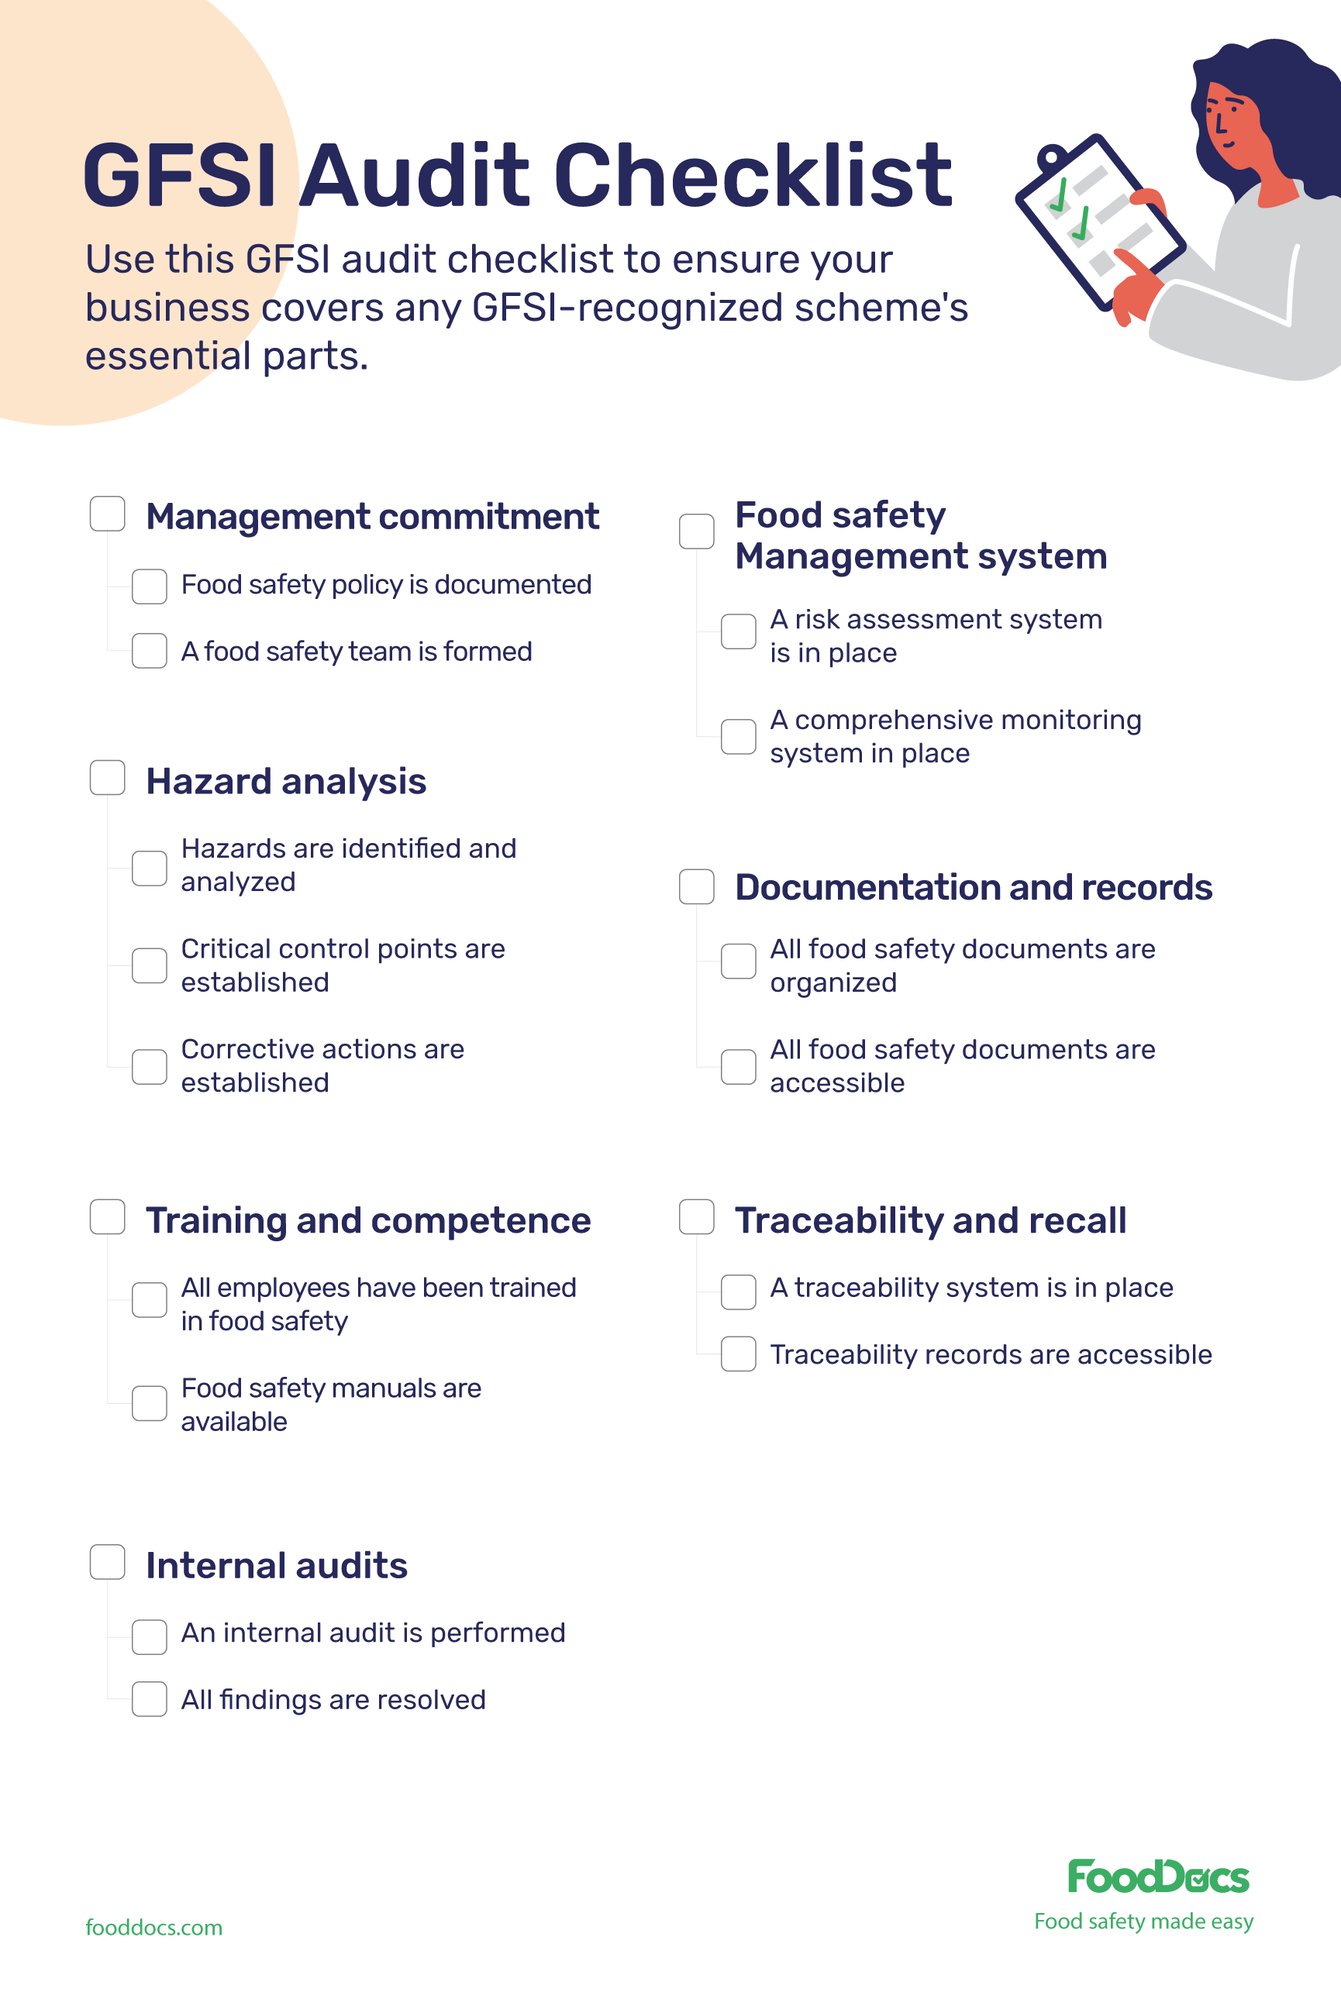 GFSI audit checklist